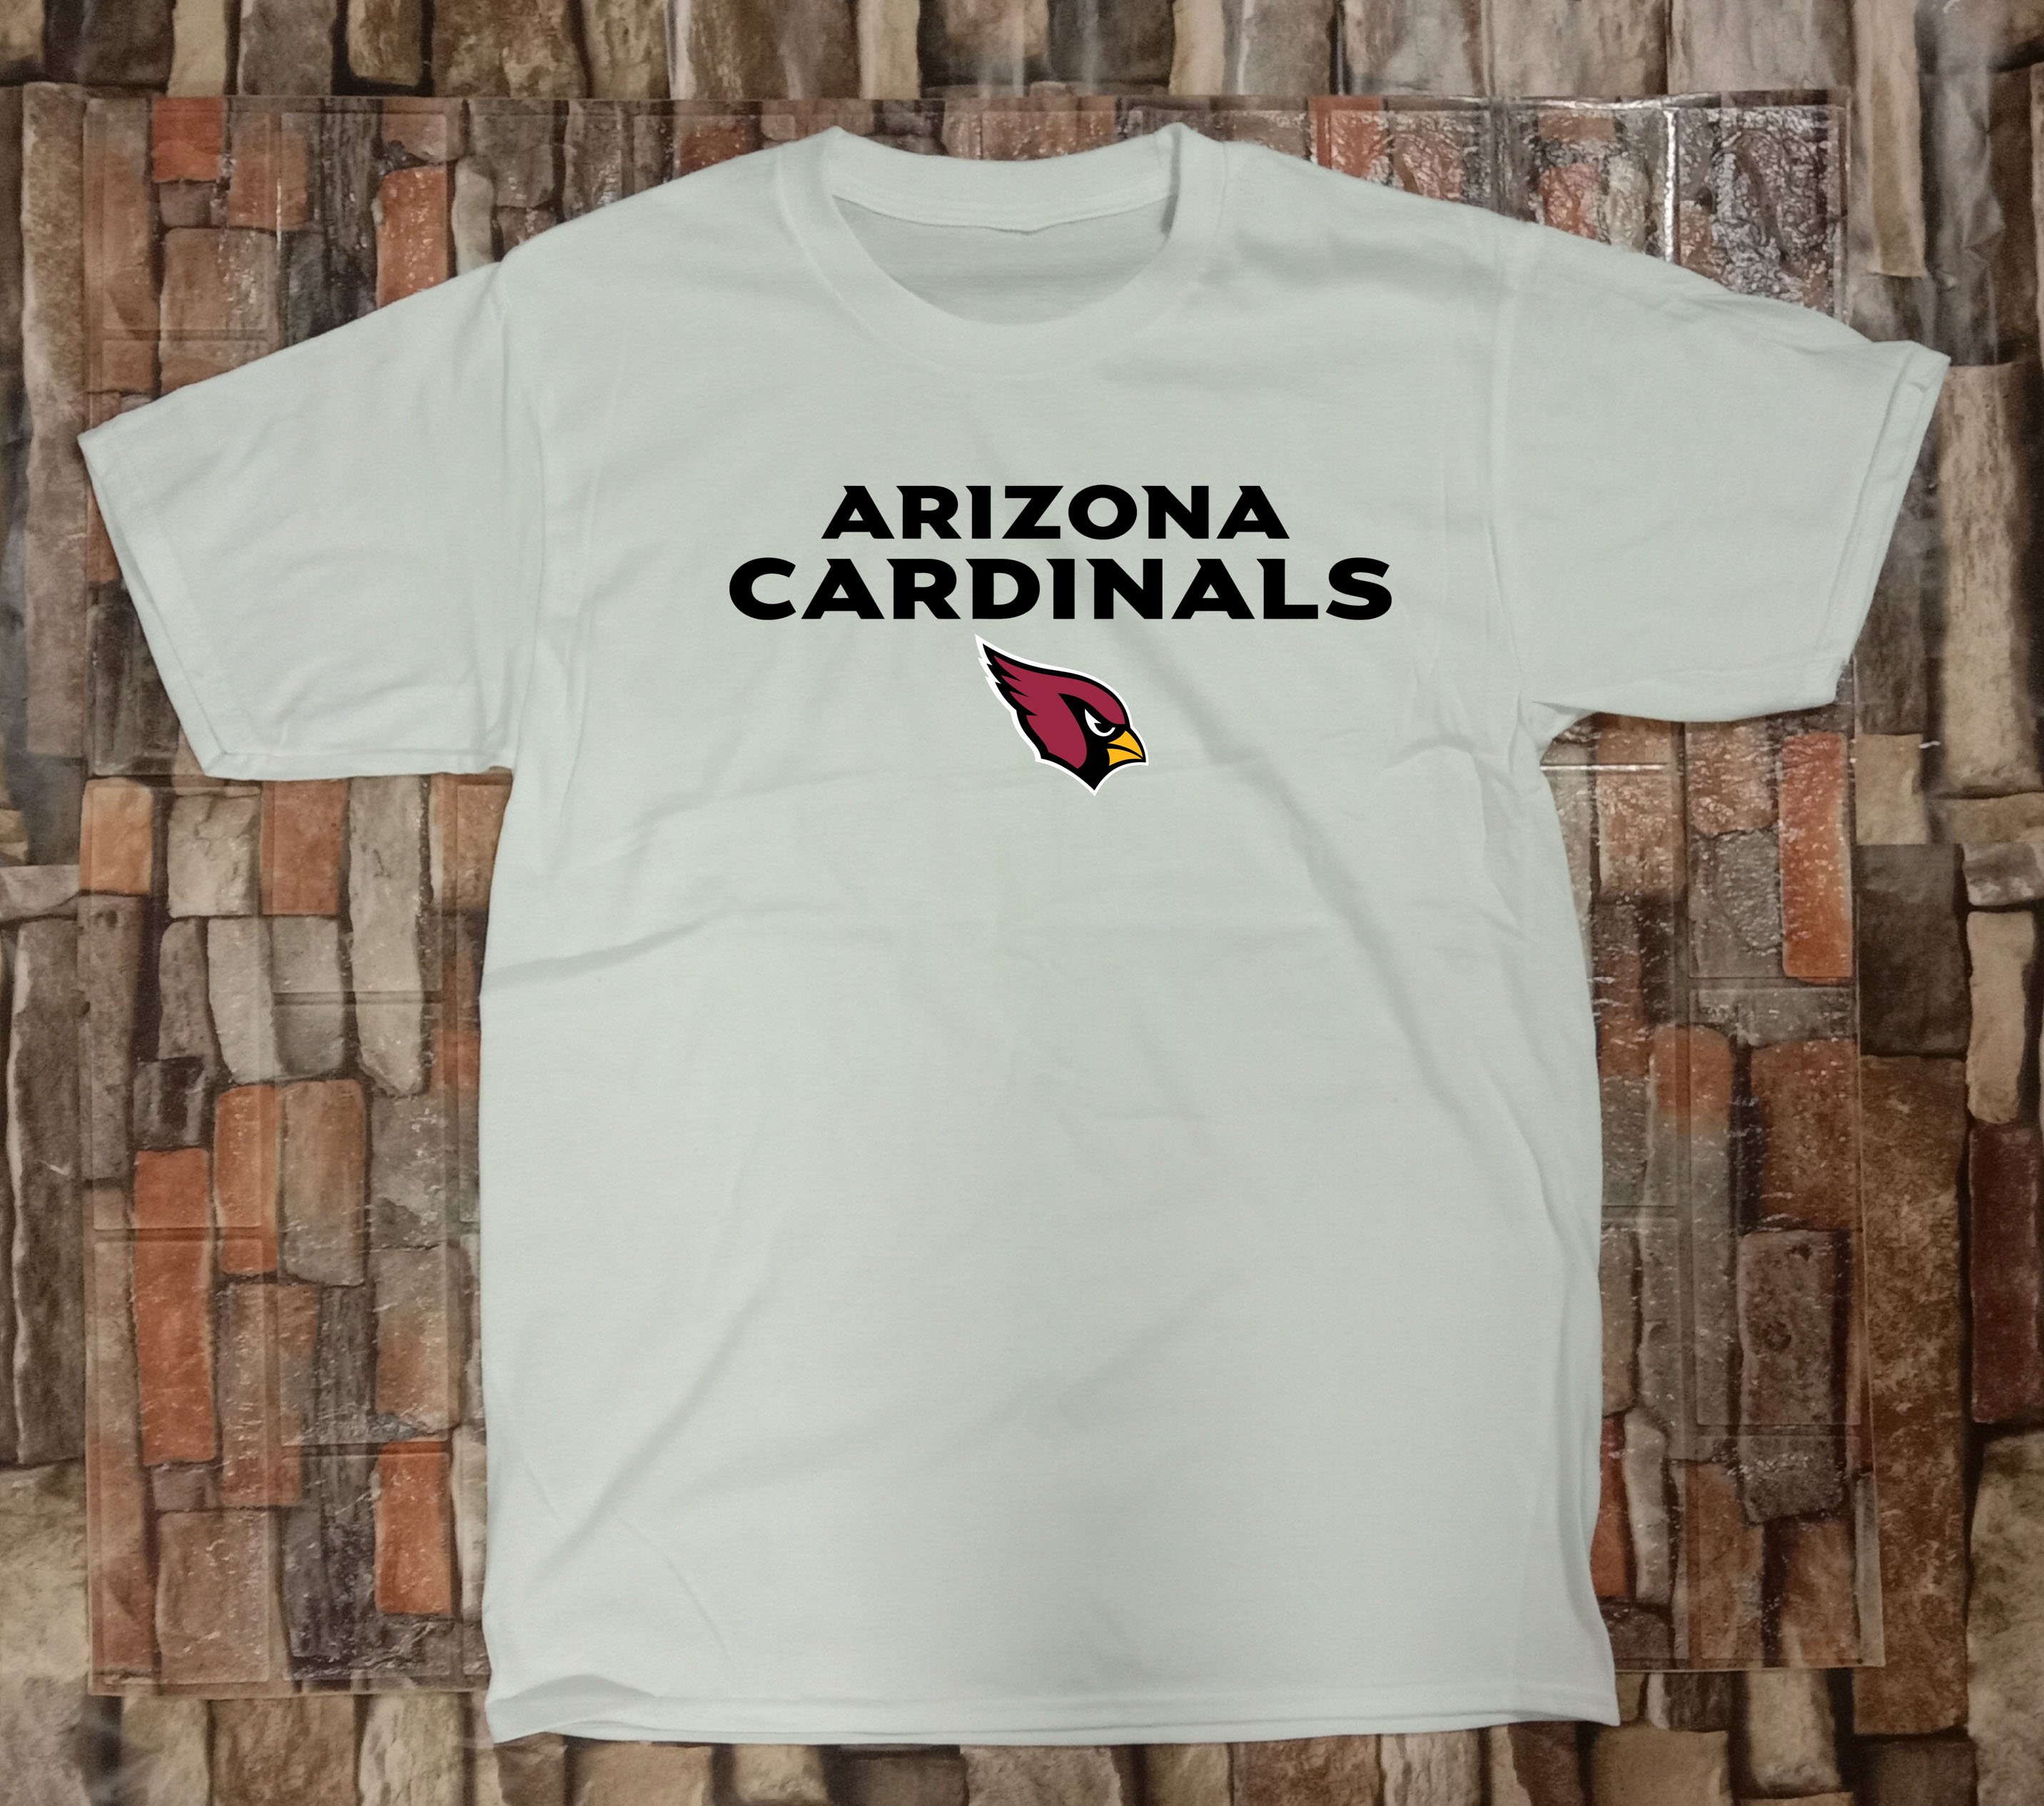 cheap arizona cardinals shirts